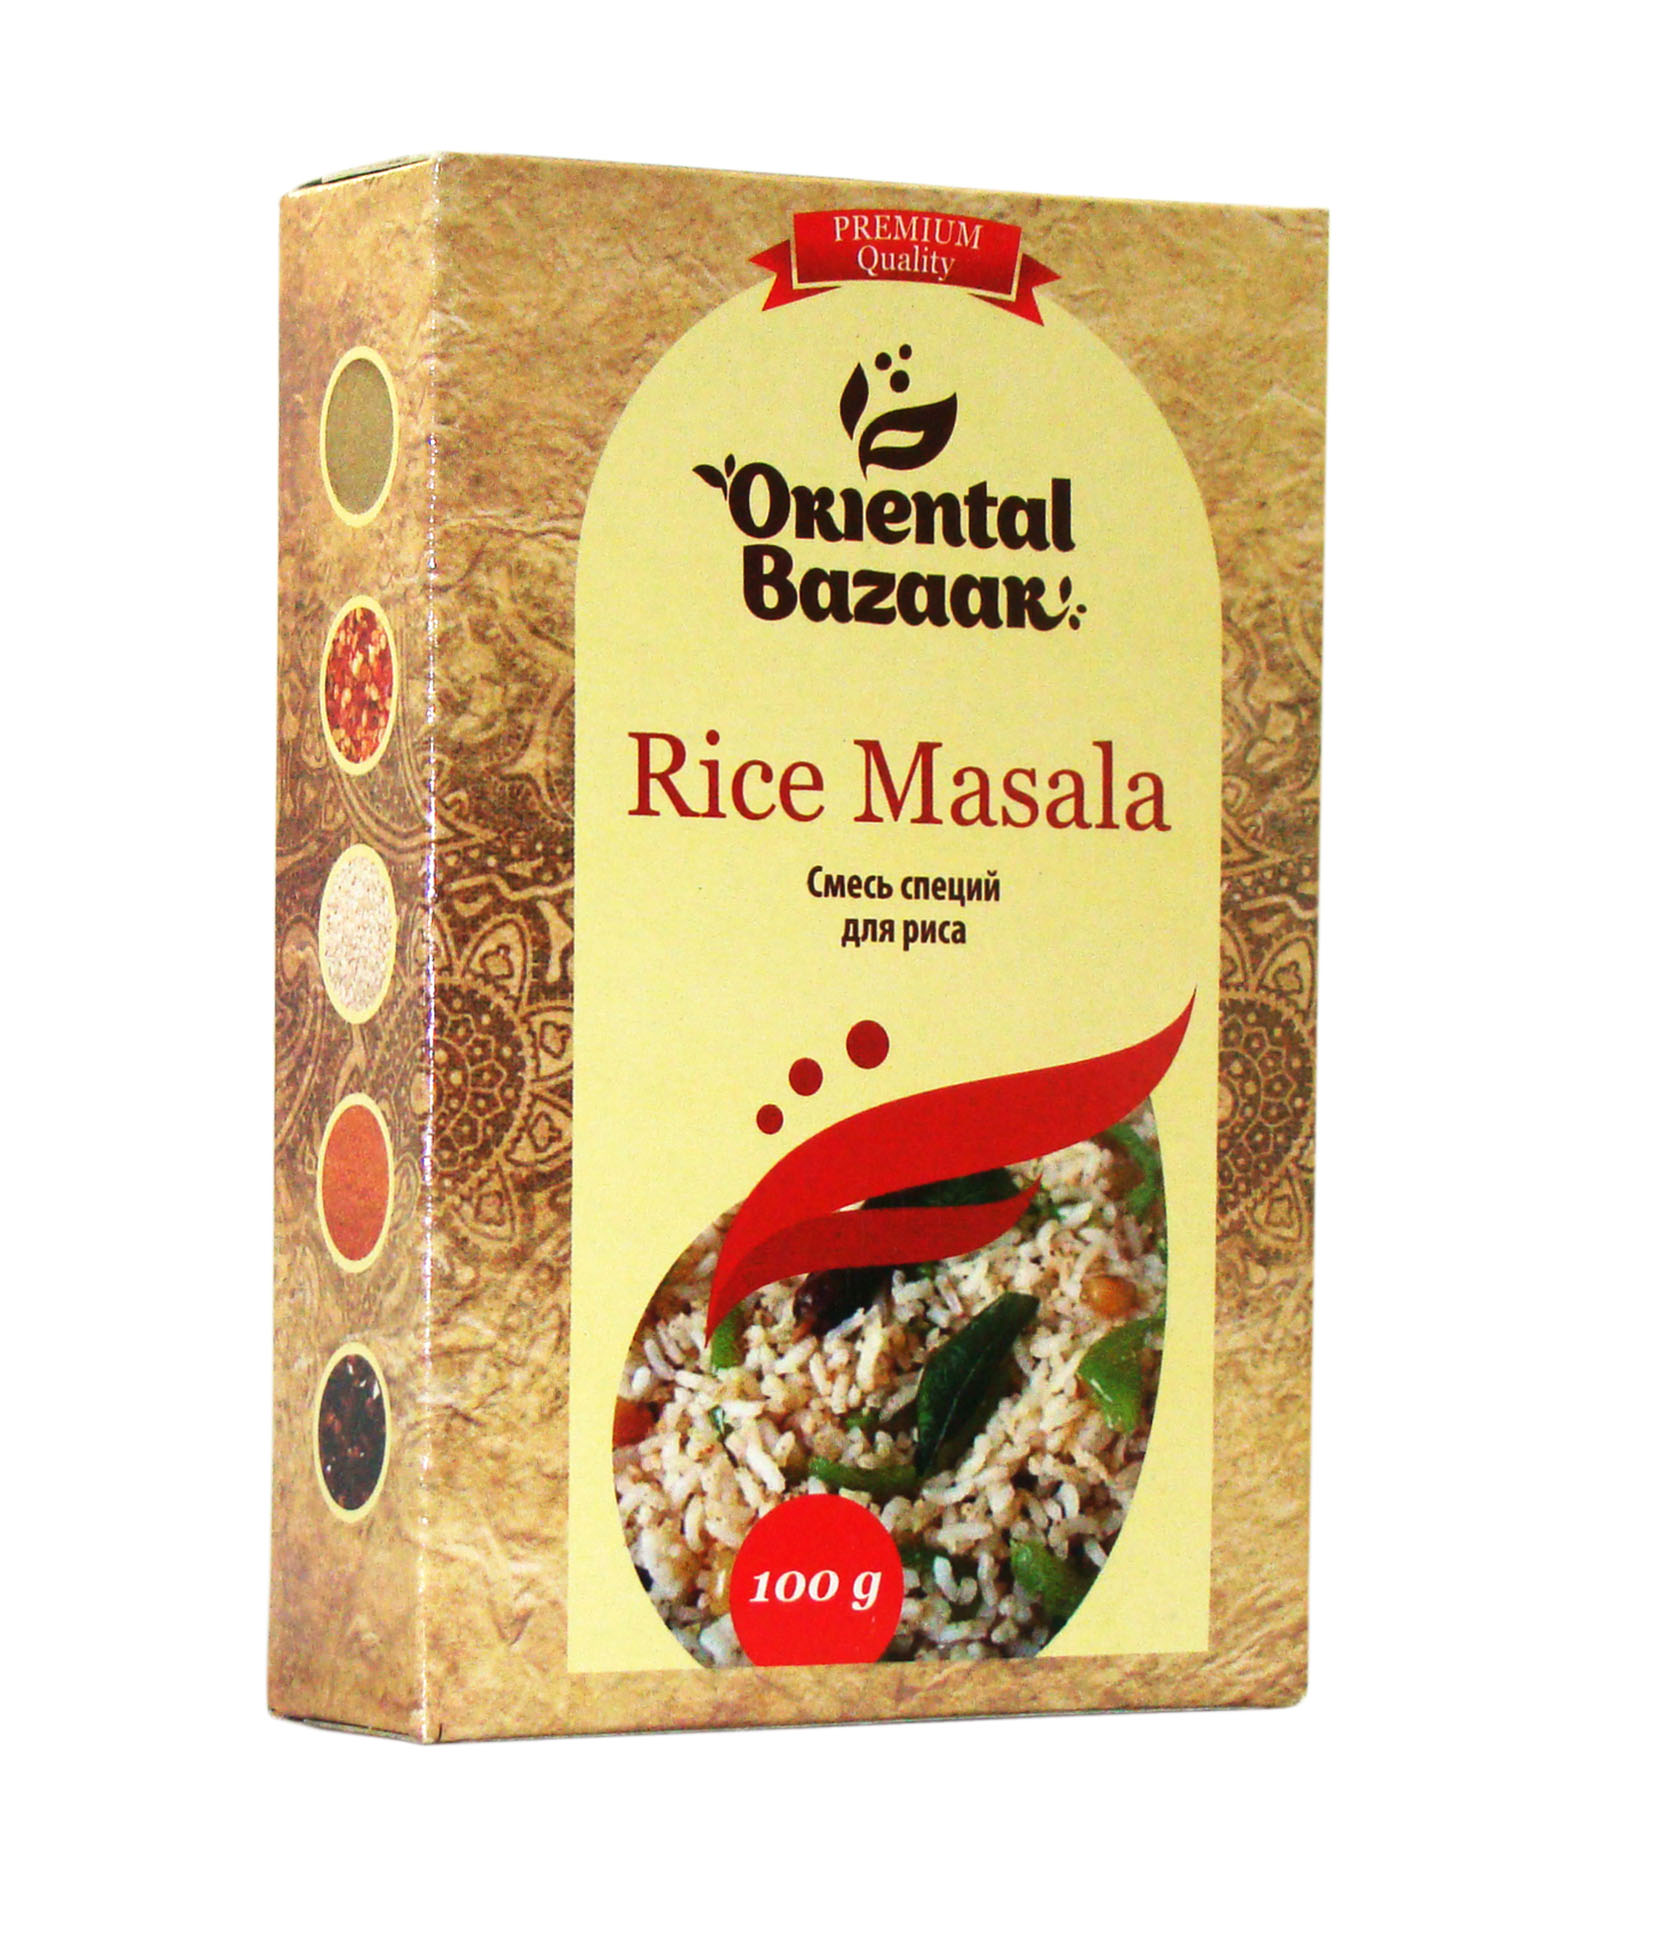 Rice Masala / Смесь специй для риса 100 гр